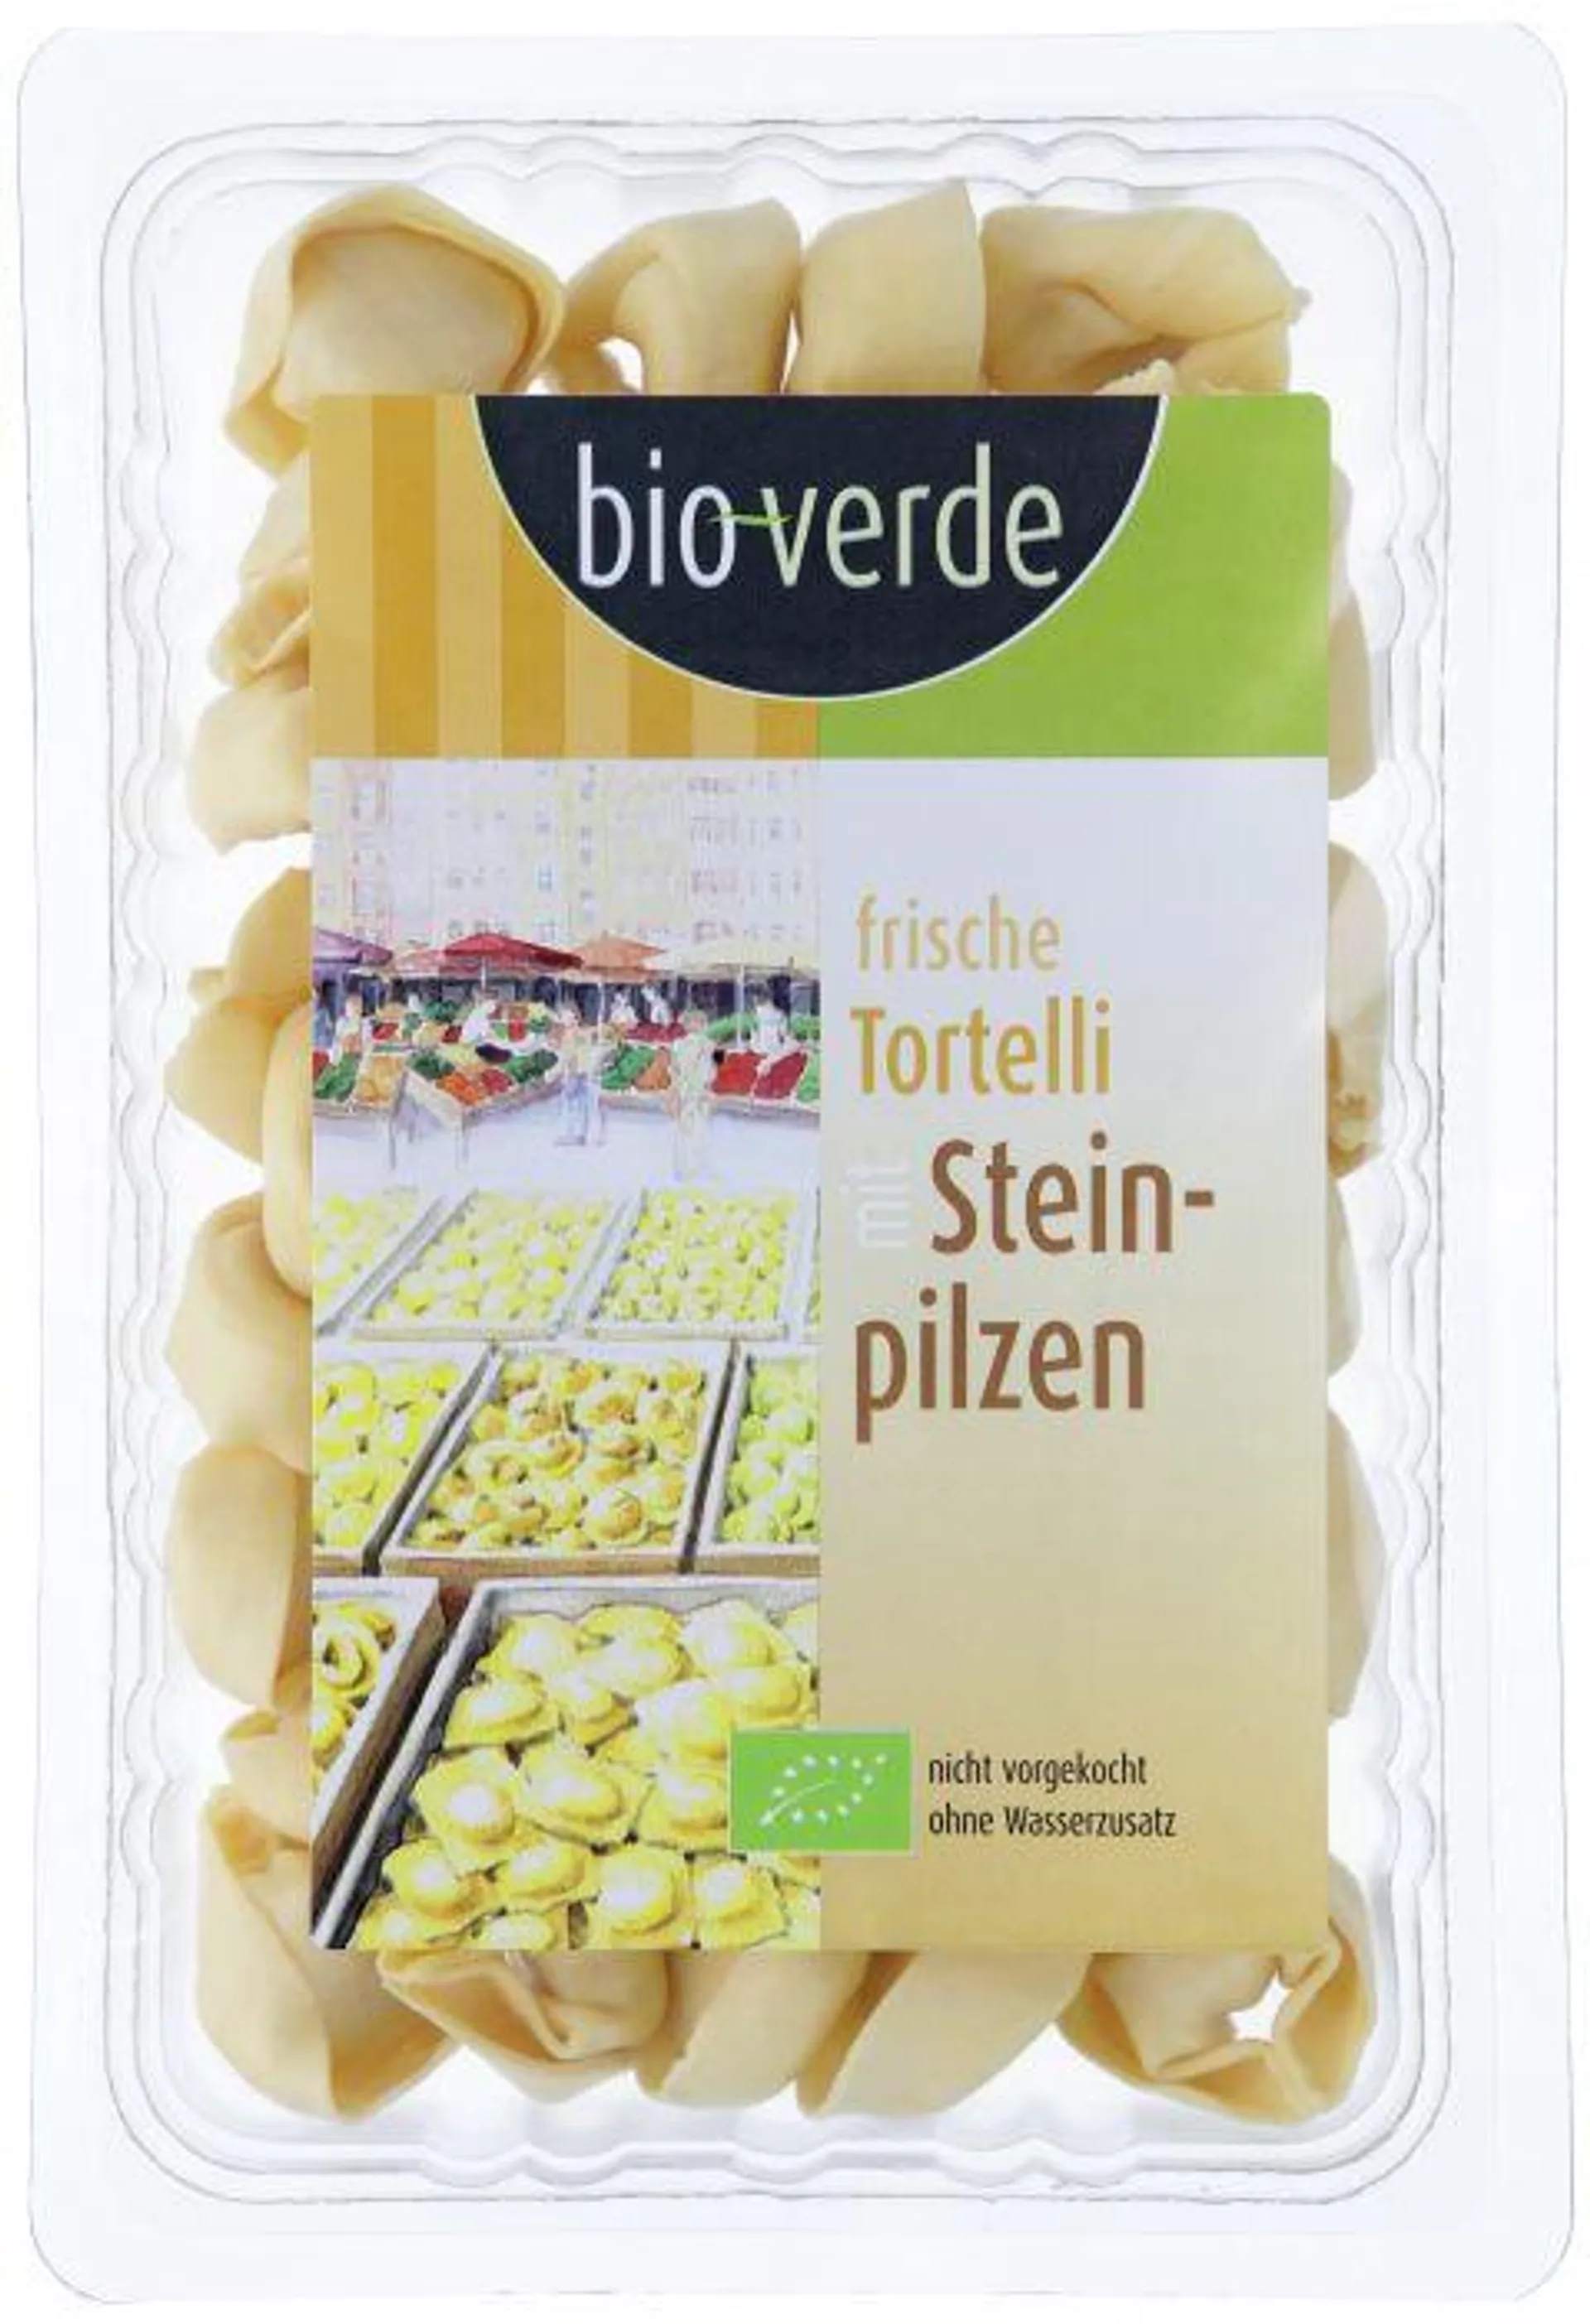 bio-verde Frische Tortelli mit Steinpilz 250g